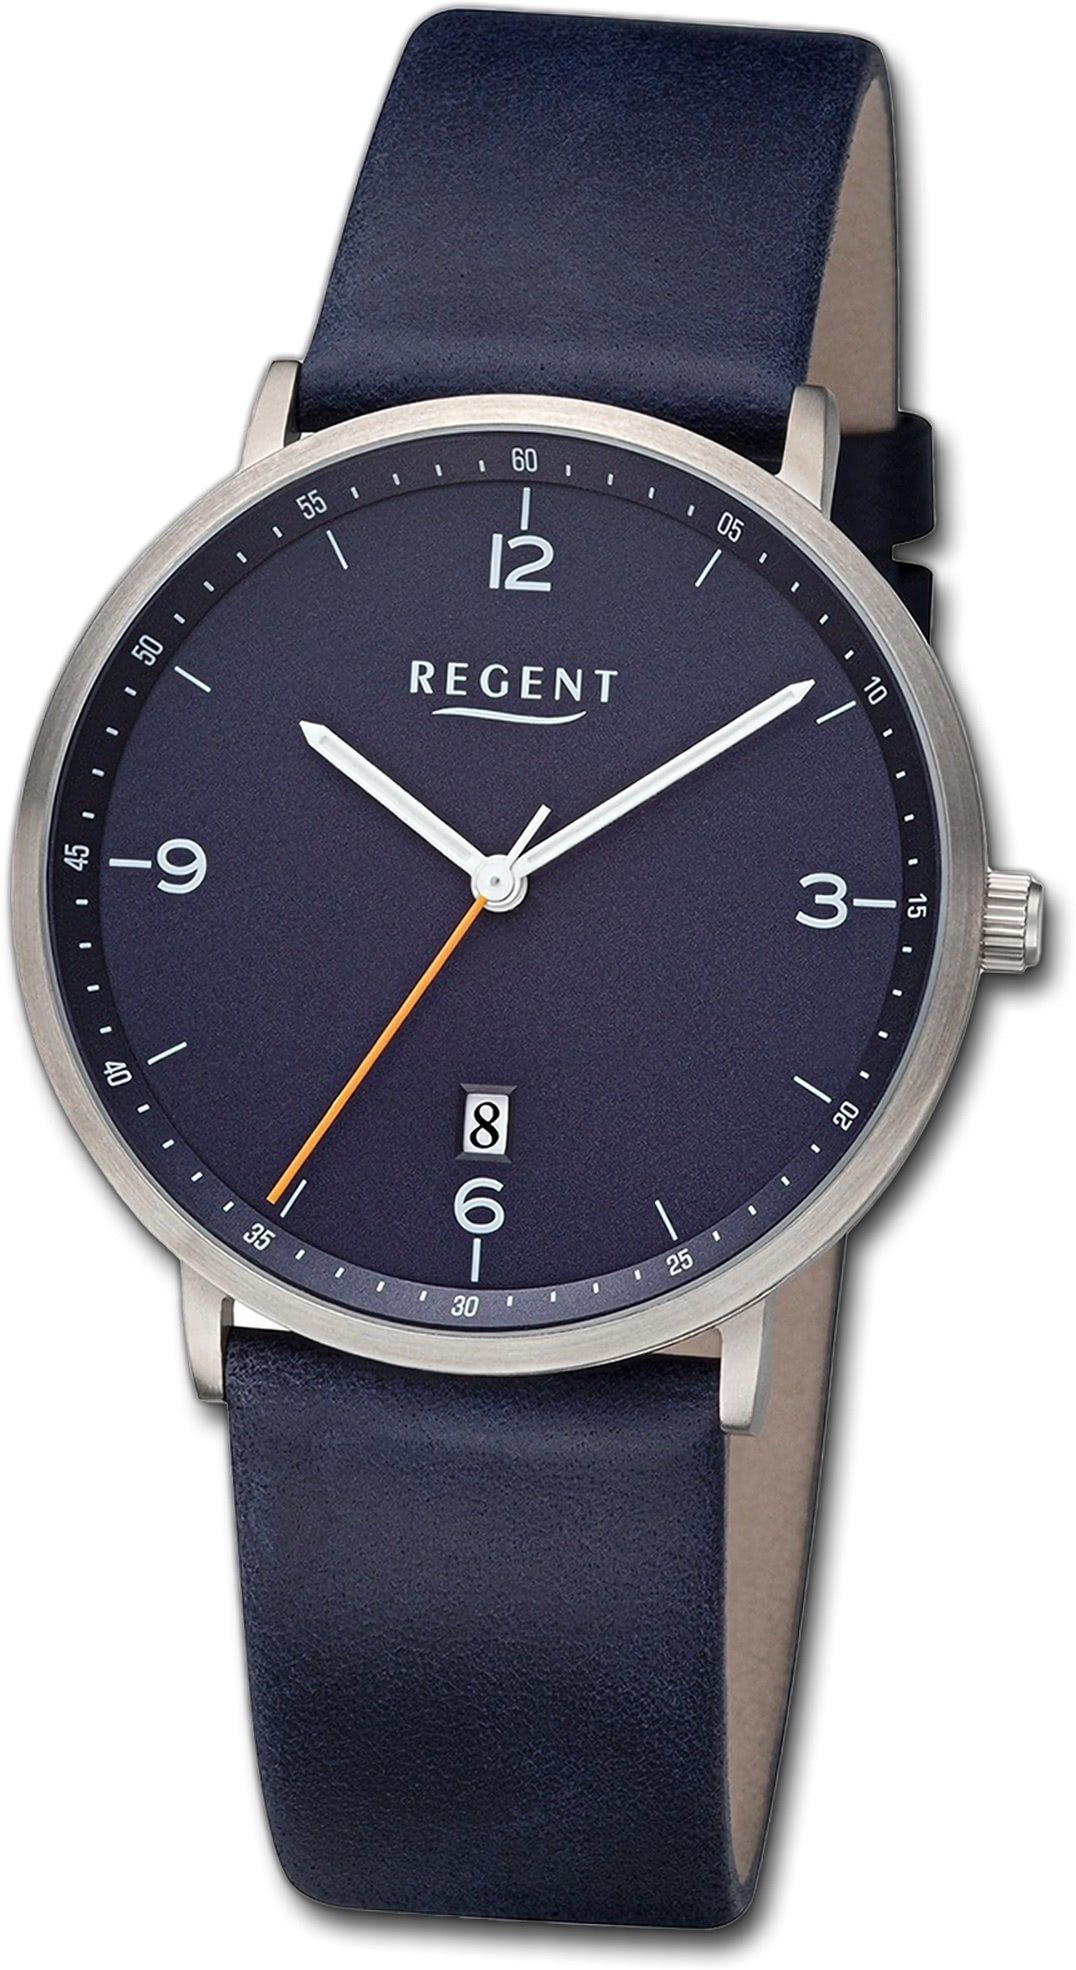 Regent Quarzuhr Regent Herren Armbanduhr Analog, Herrenuhr Lederarmband dunkelblau, rundes Gehäuse, groß (ca. 39mm)